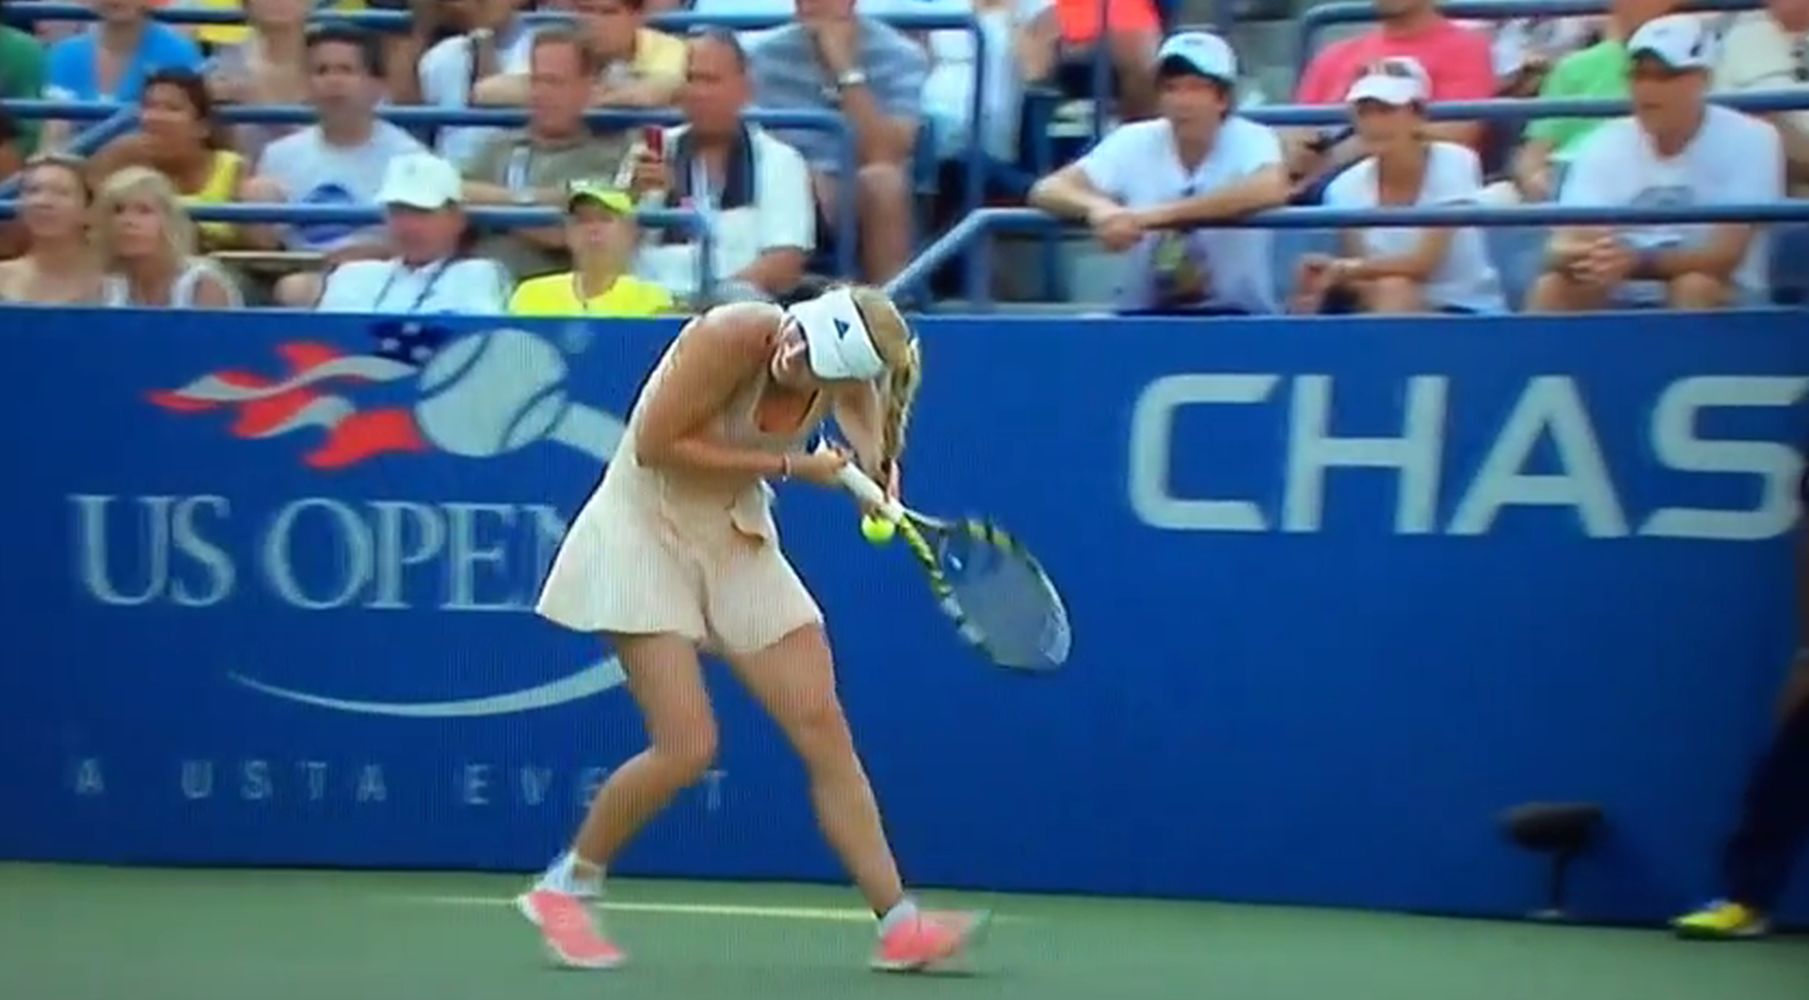 La joueuse s'est coincée sa jolie tresse blonde dans sa raquette.